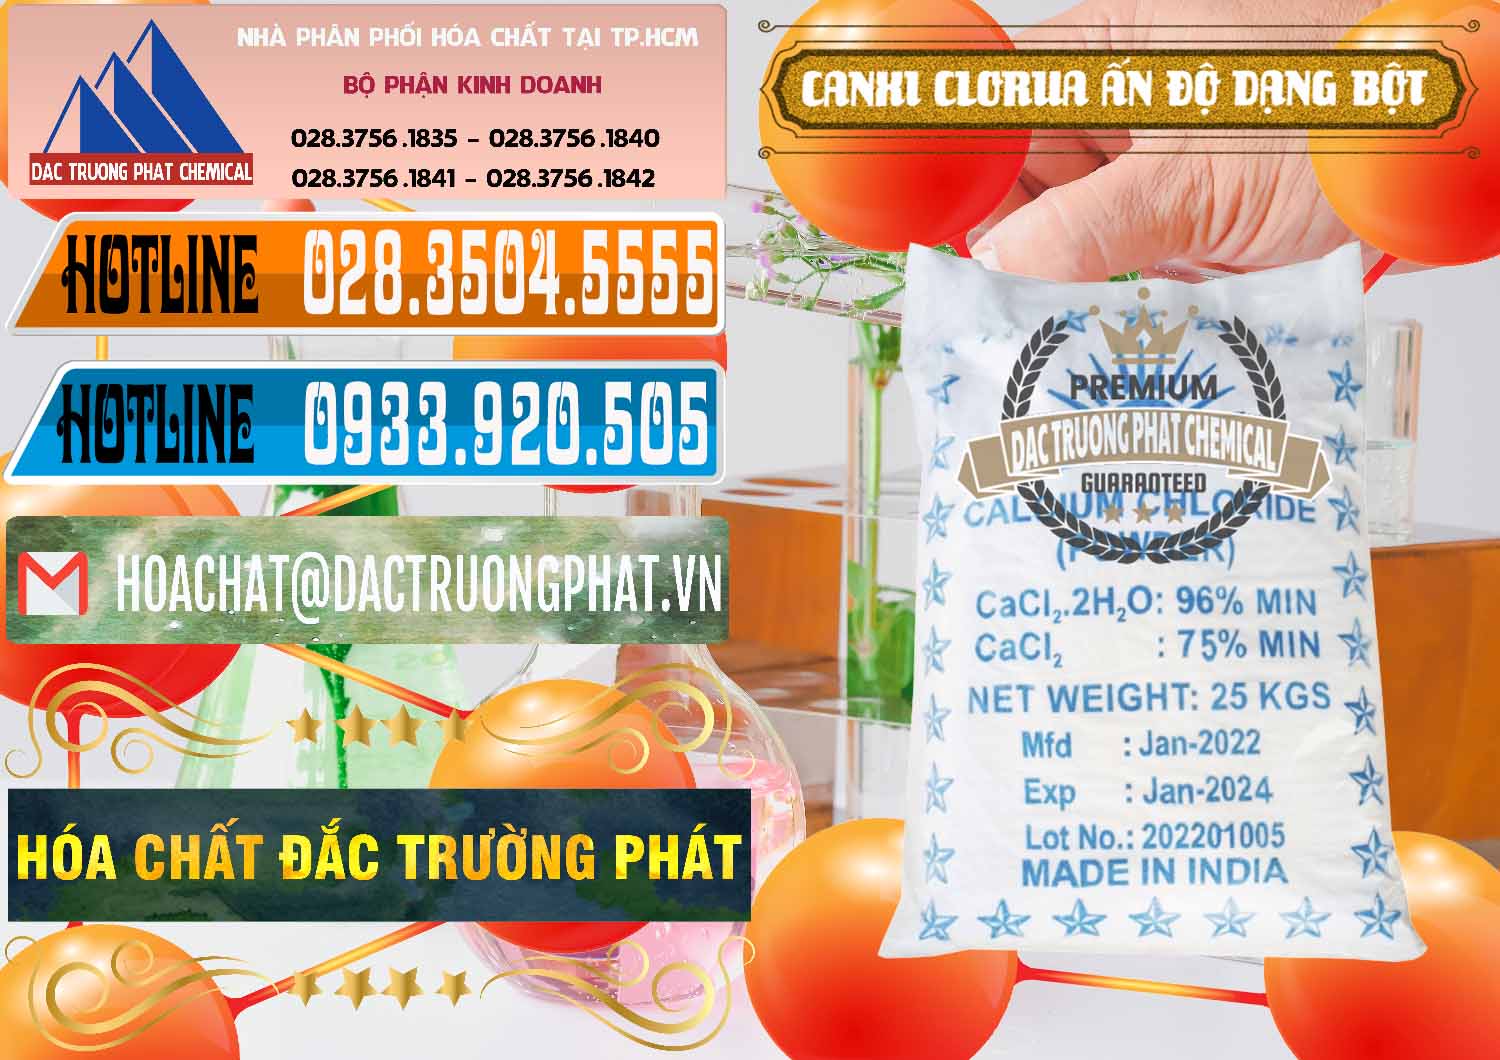 Nhà cung ứng & bán CaCl2 – Canxi Clorua 96% Dạng Bột Ấn Độ India - 0420 - Kinh doanh ( phân phối ) hóa chất tại TP.HCM - stmp.net